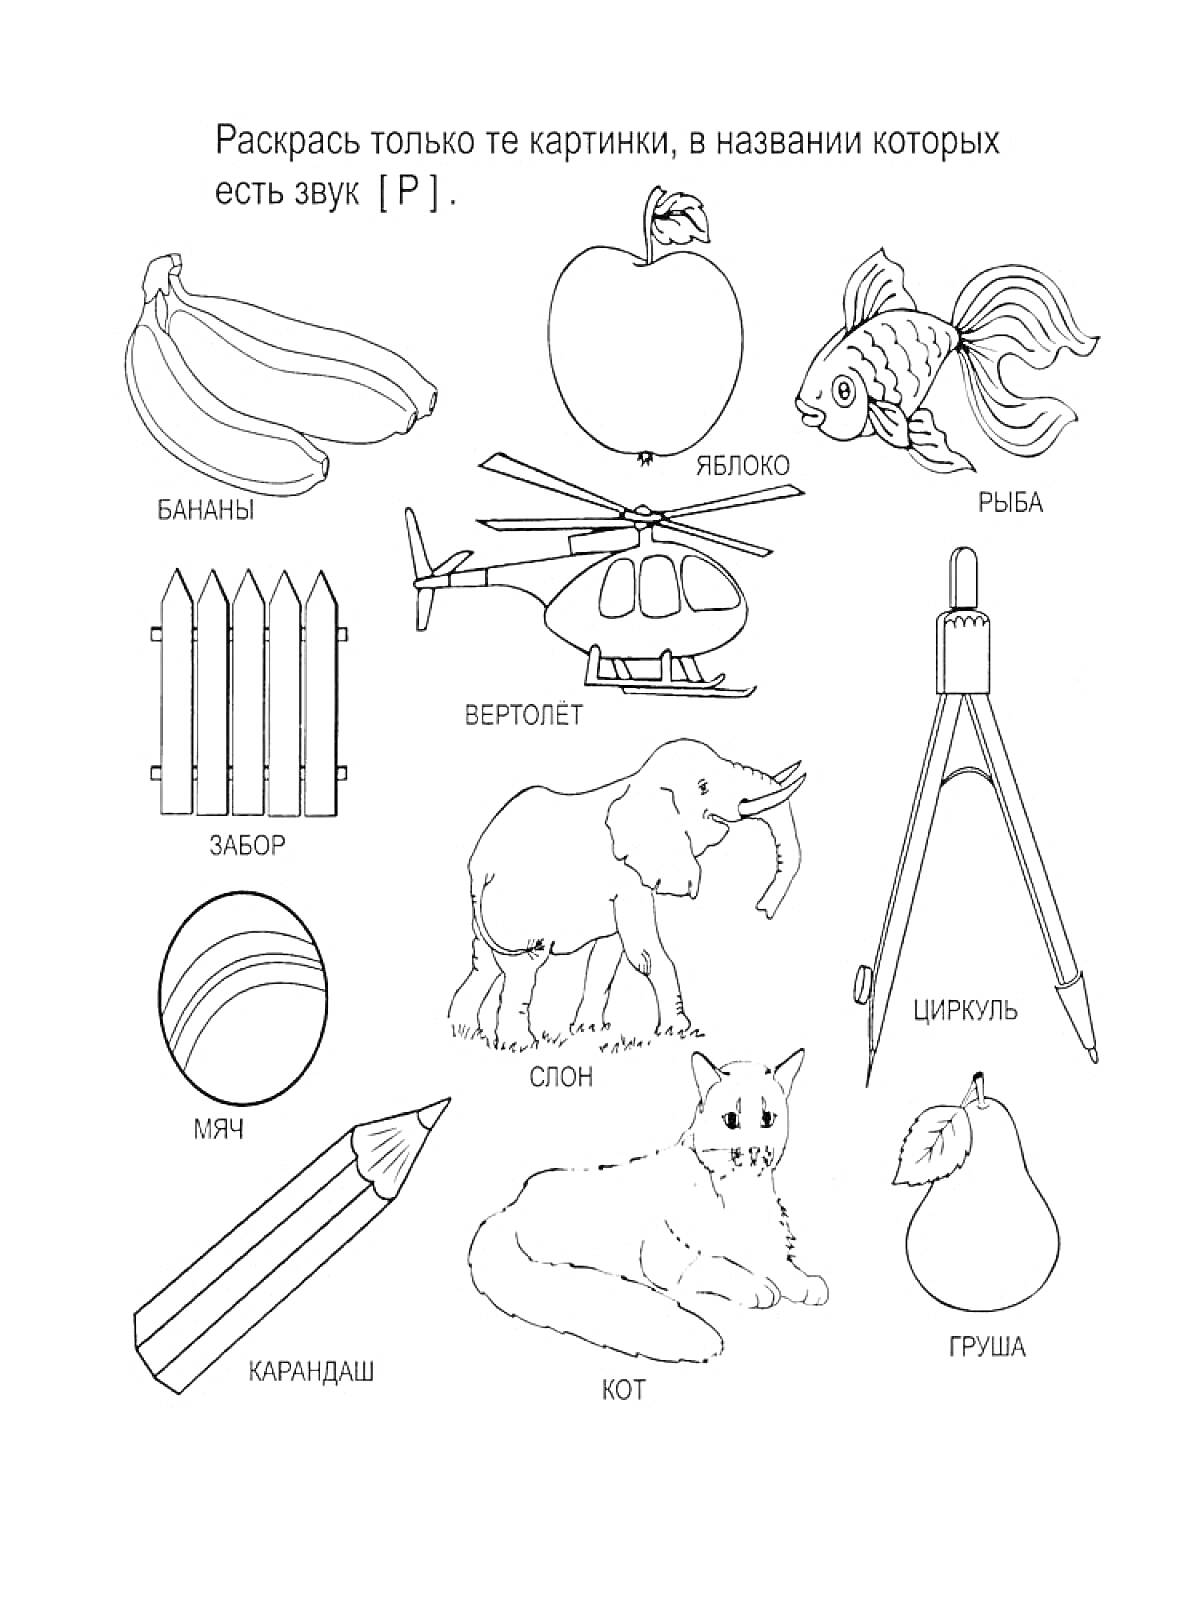 Логопедическая раскраска - бананы, яблоко, рыба, забор, вертолет, циркуль, мяч, слон, кот, груша, карандаш